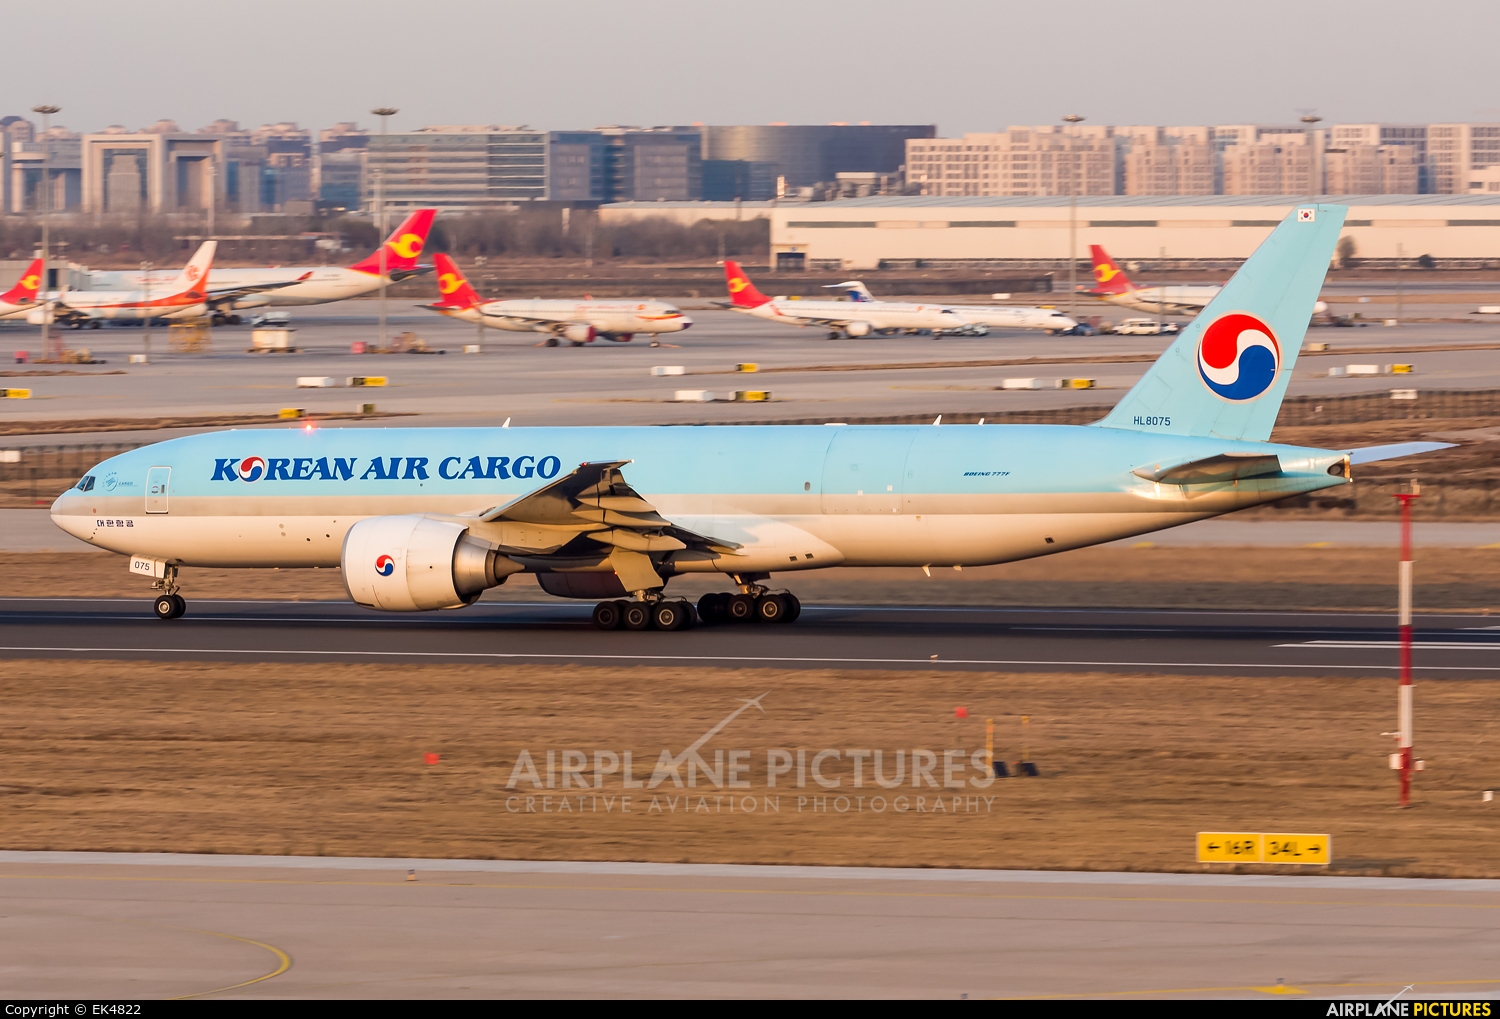 Korean Air Cargo HL8075 aircraft at Tianjin Binhai International